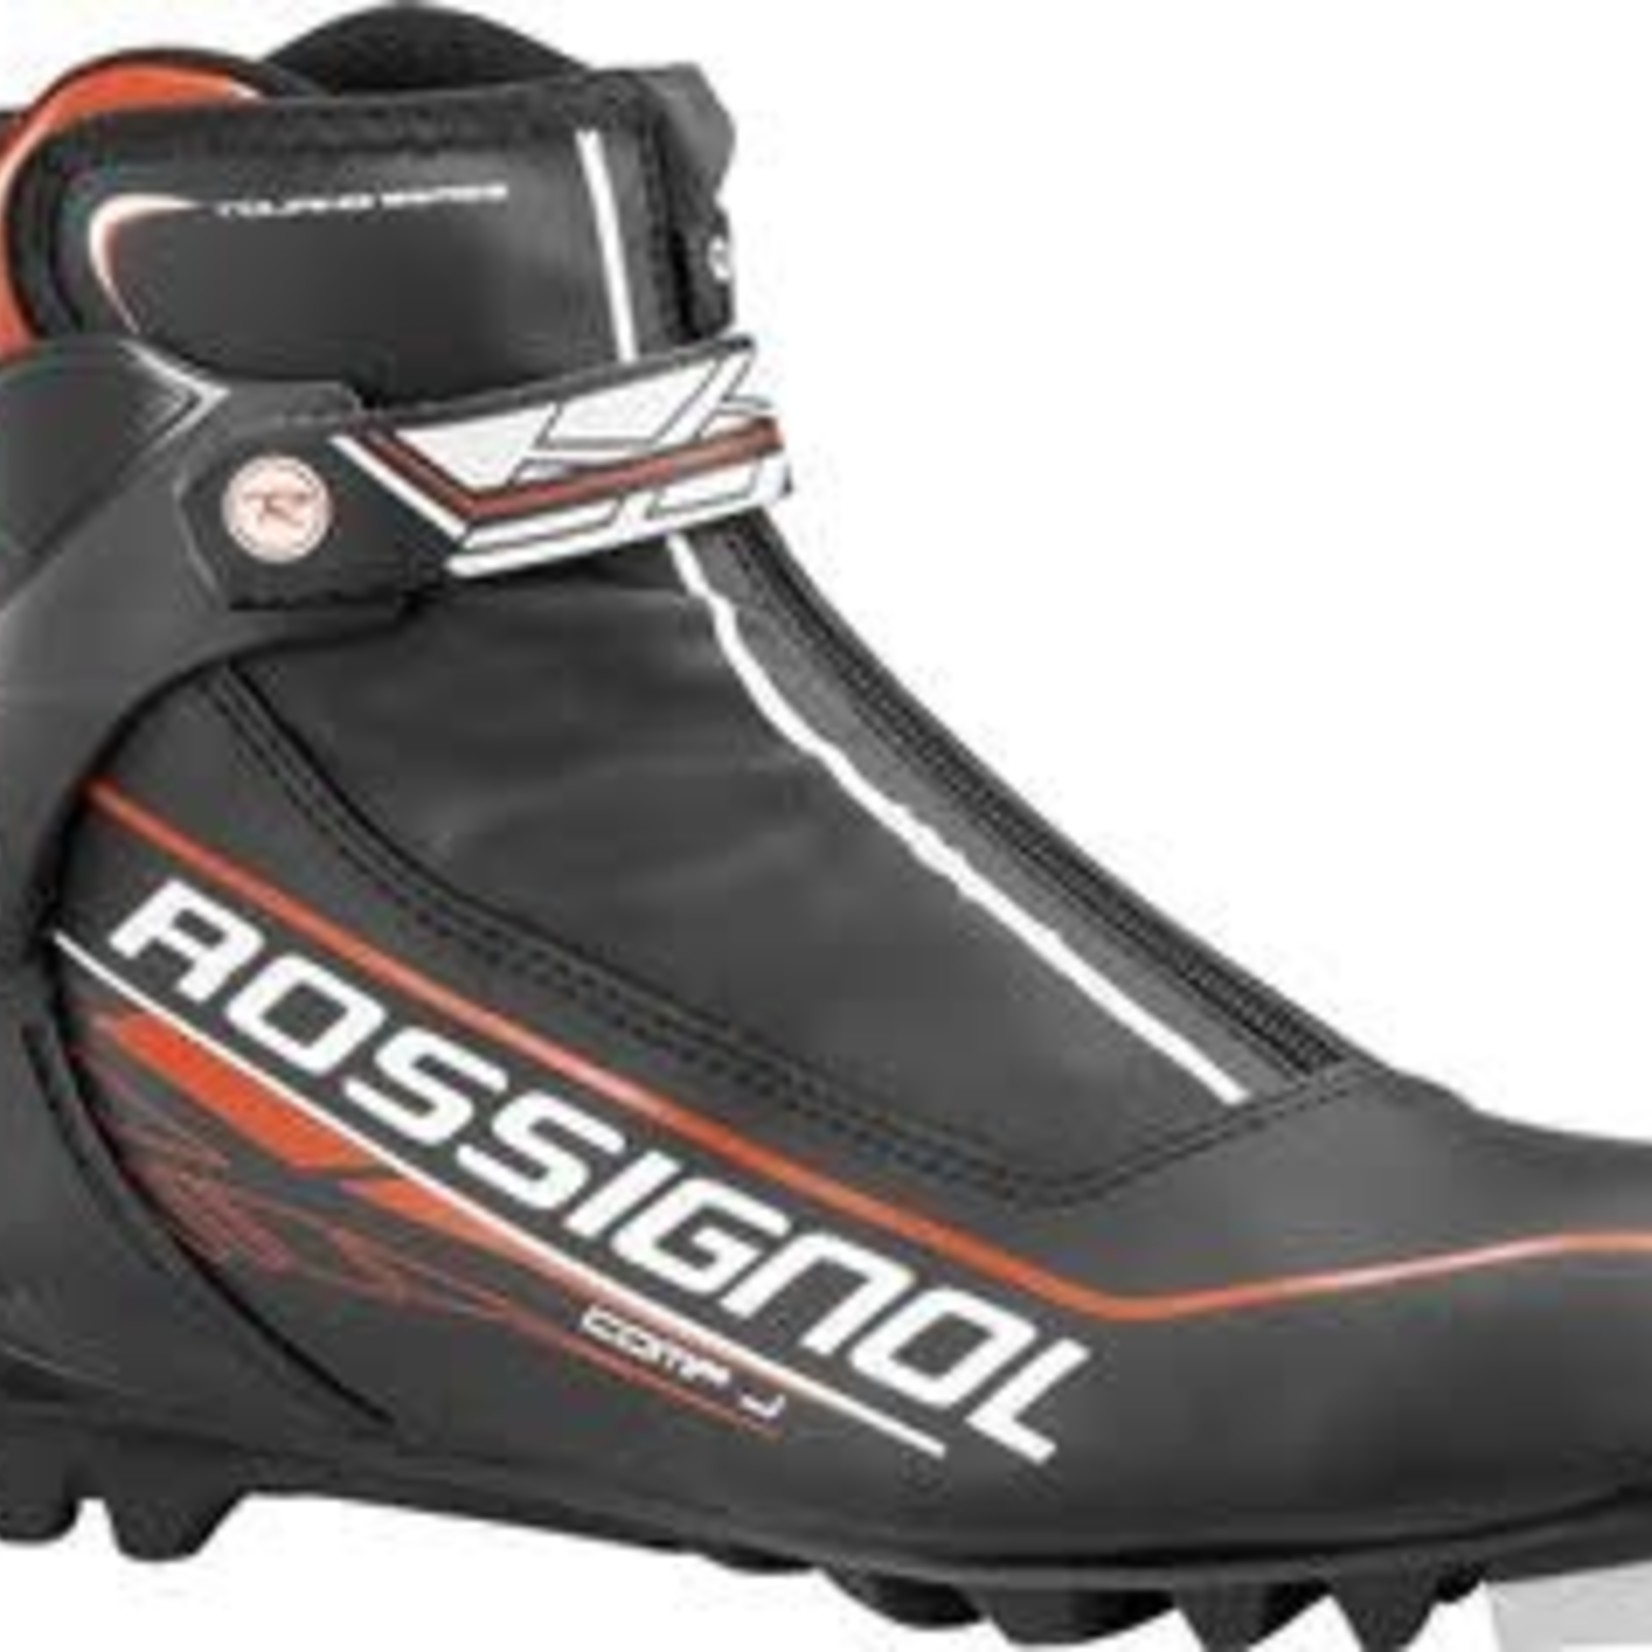 ROSSIGNOL CANADA ROSSIGNOL, Ski Boots, Combi, Comp Junior 2014